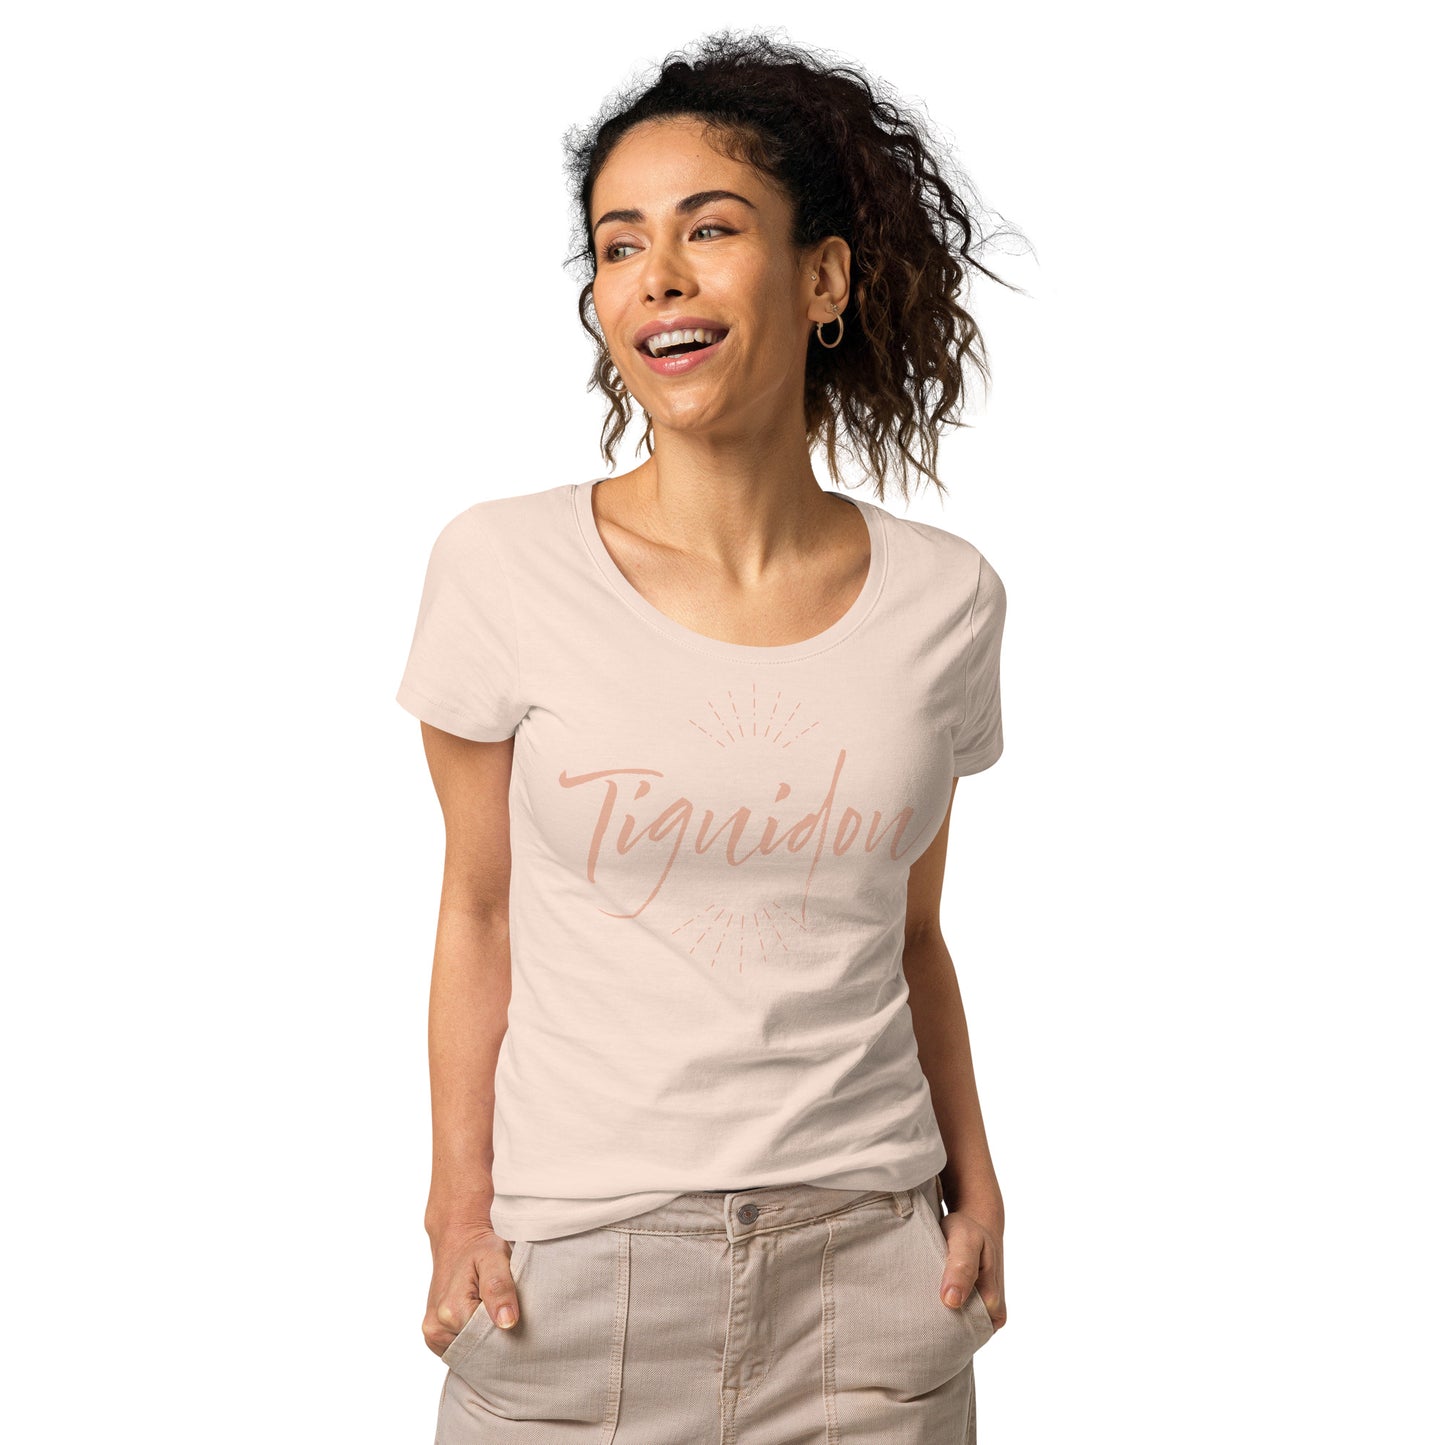 Tiguidou women’s organic t-shirt